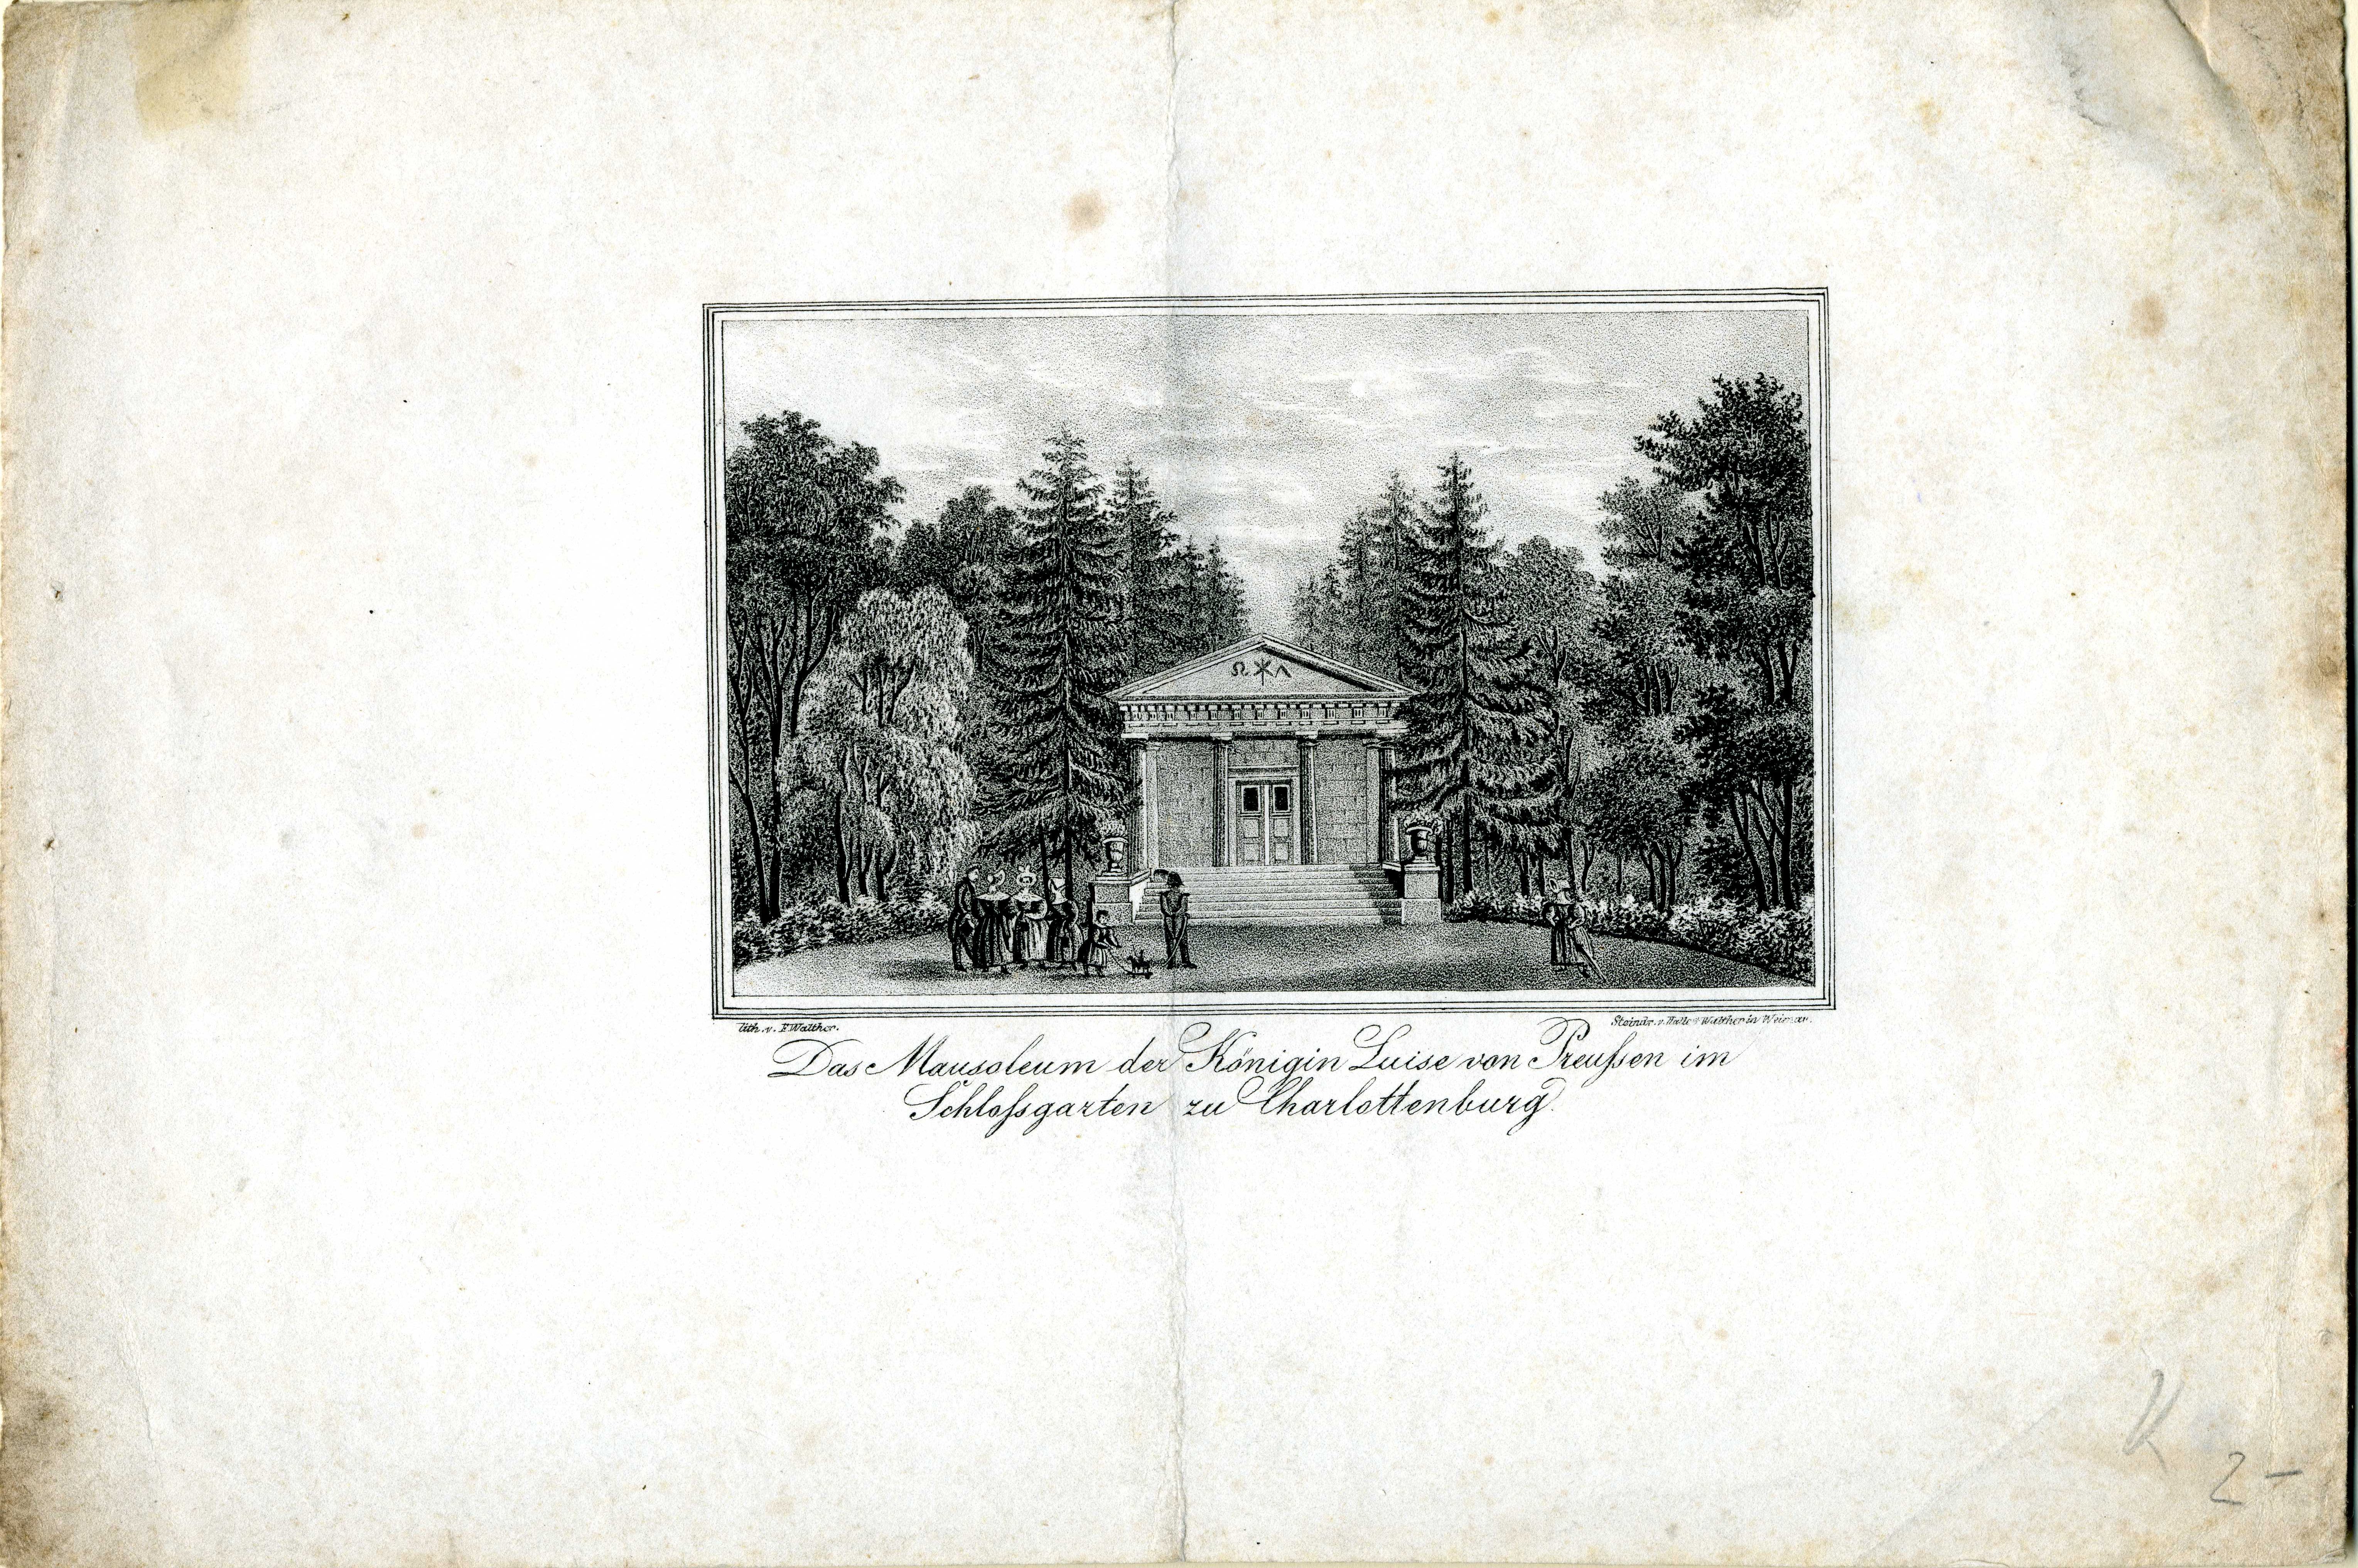 Grafik "Das Mausoleum der Königin Luise von Preußen im Schloßgarten zu Charlottenburg" (Museum für Sepulkralkultur Public Domain Mark)